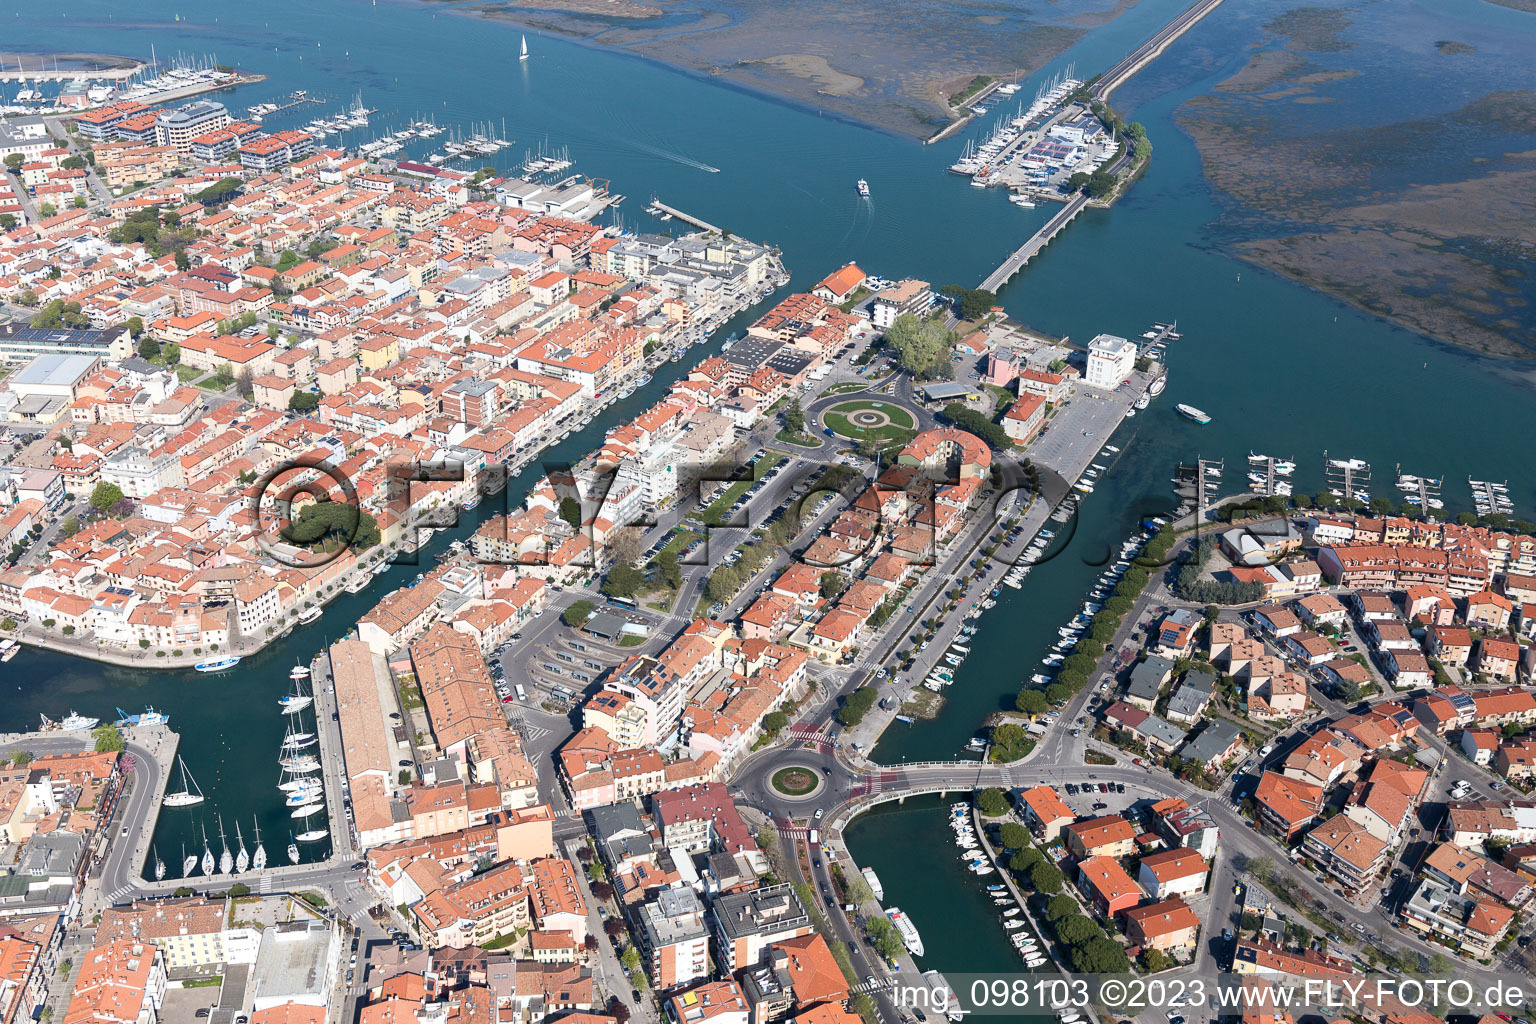 Grado in the state Friuli Venezia Giulia, Italy viewn from the air